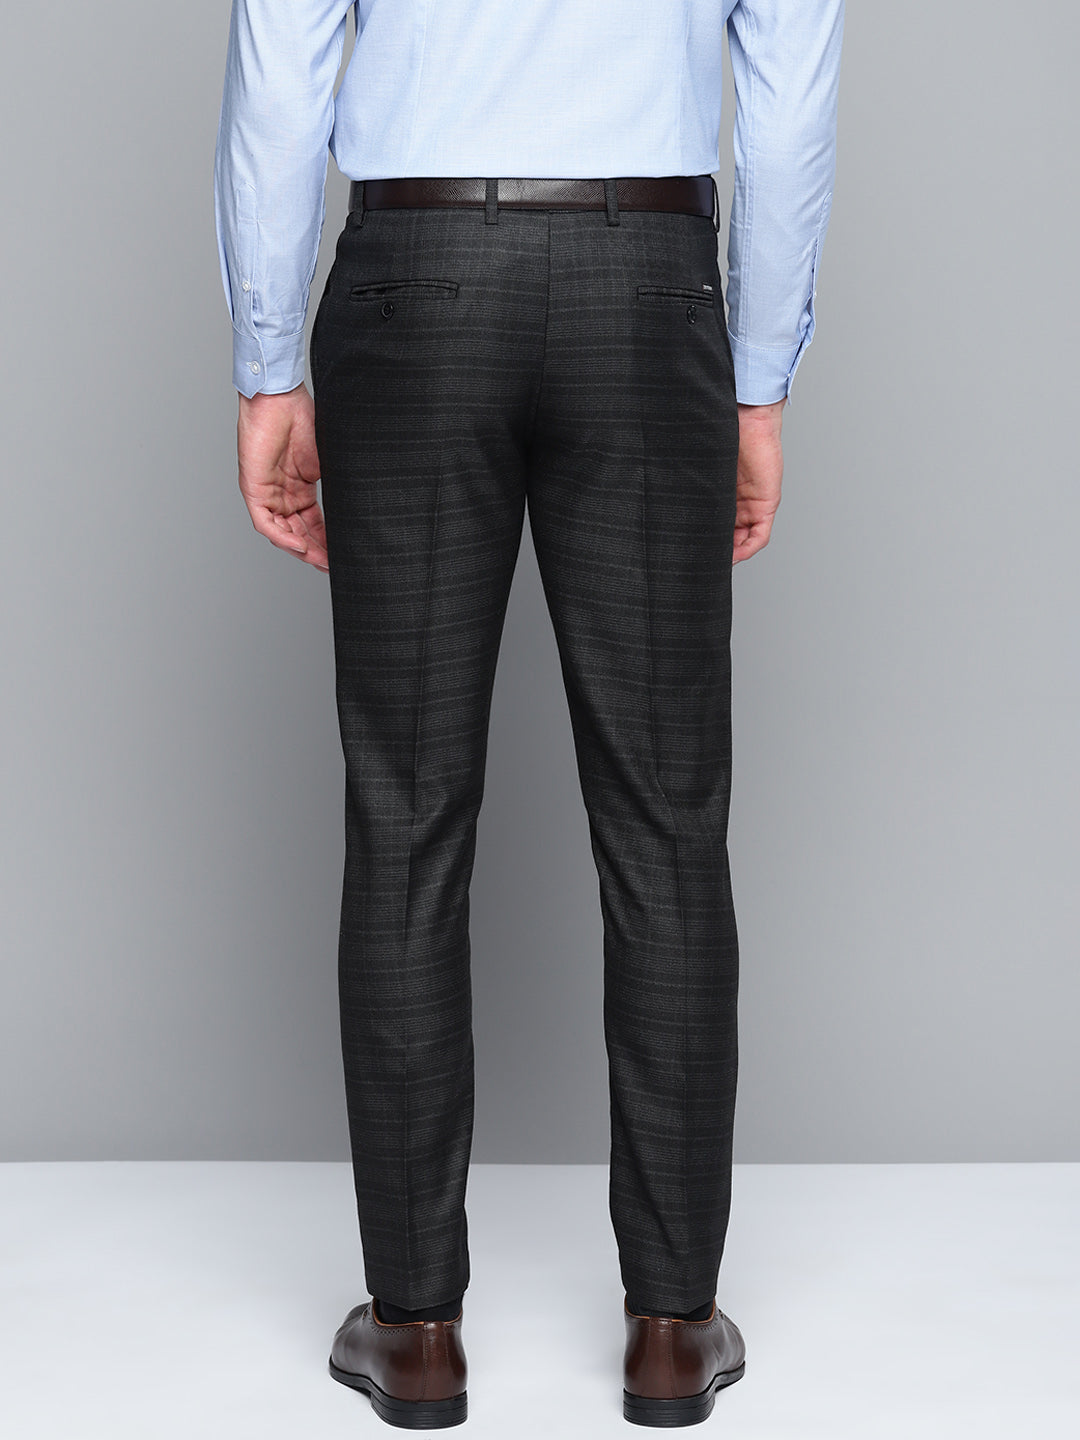 DENNISON Men Smart Self Design Tapered Fit Formal Trousers